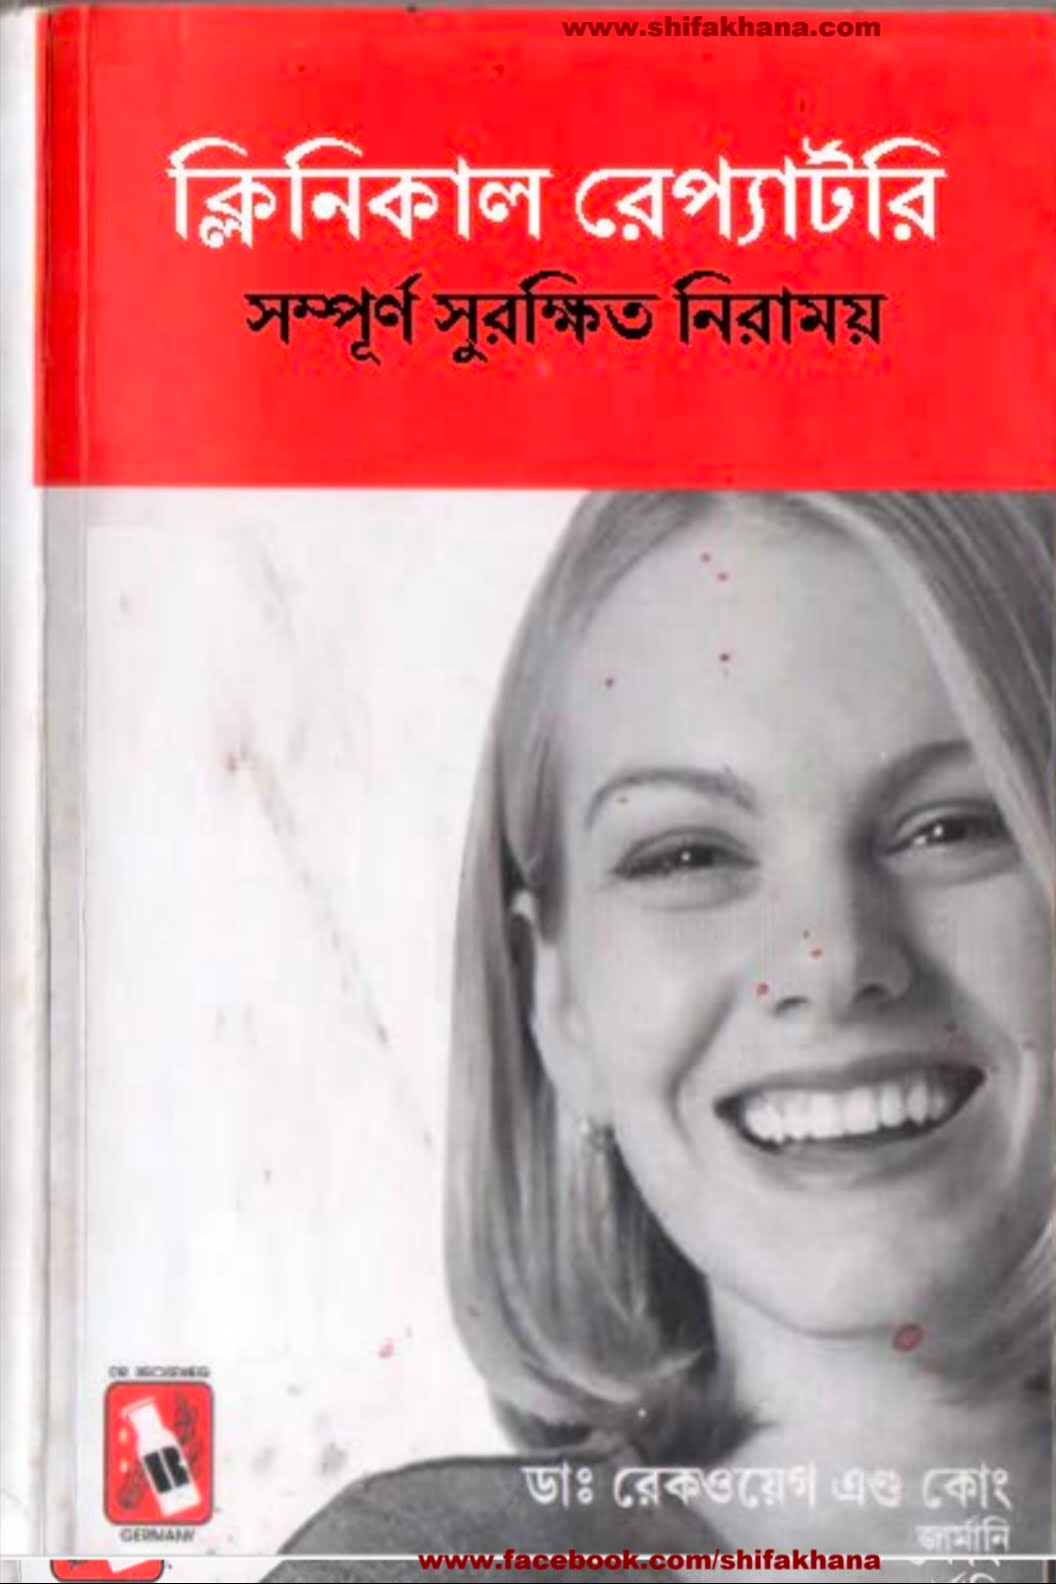 ক্লিনিক্যাল রেপার্টরি বাংলা হোমিওপ্যাথি বই | dr. Reckeweg Germany clinical Repertory Bangla homeopathy pdf download